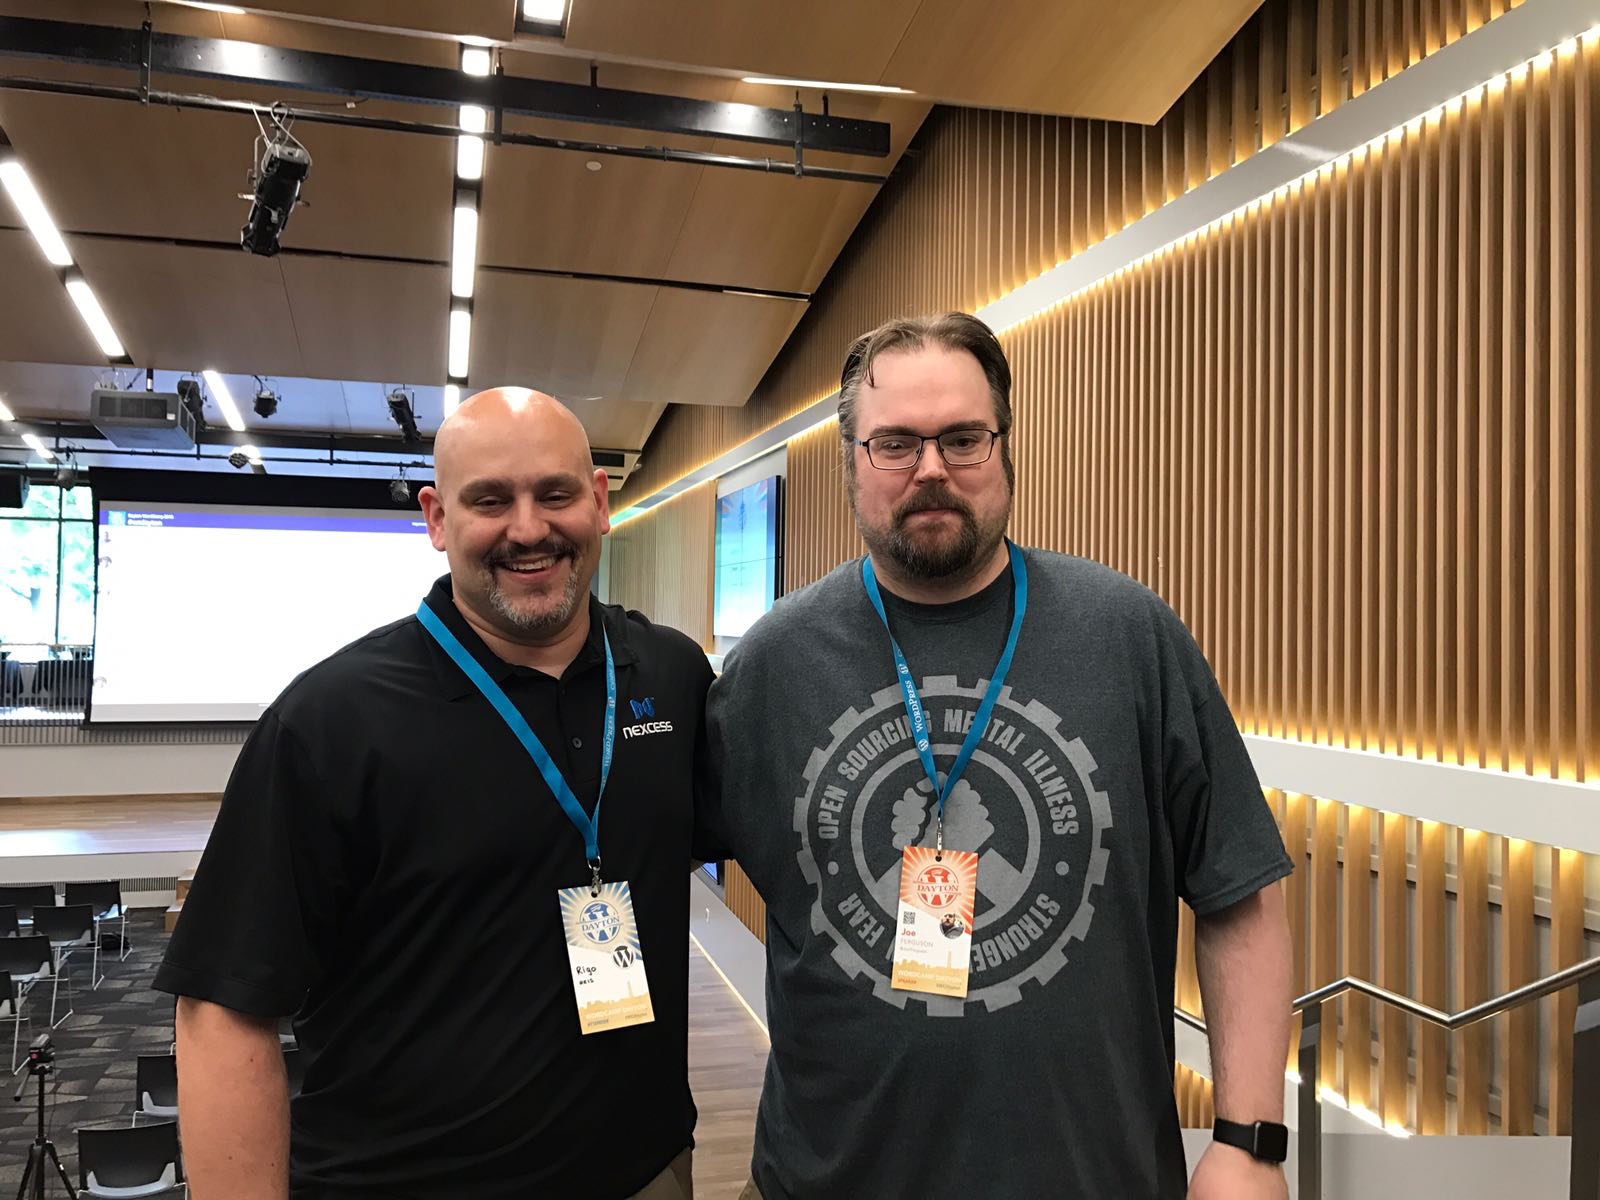 Joe Ferguson with Nexcess employee at WordCamp Dayton 2018